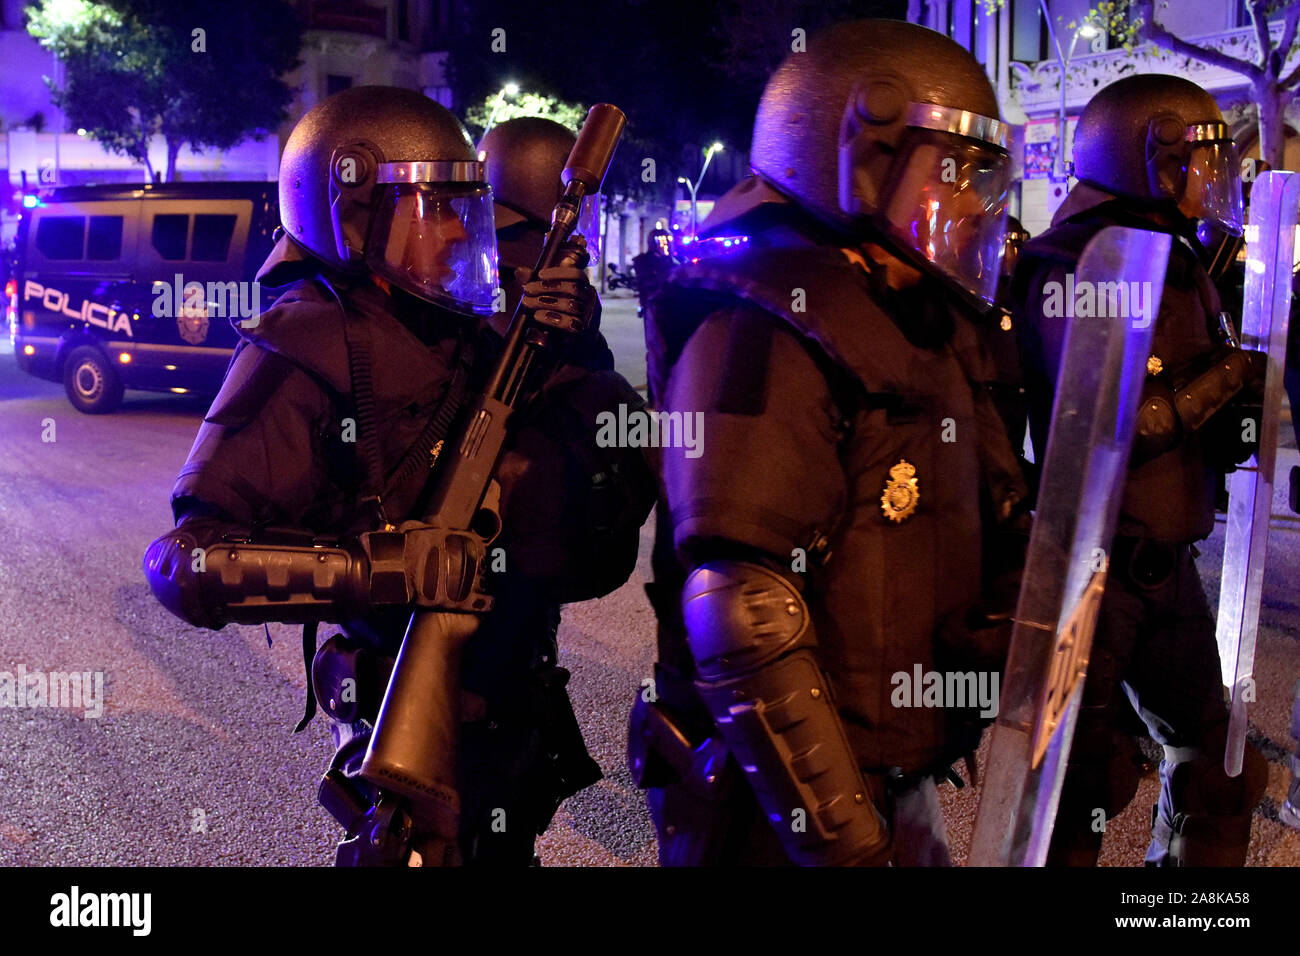 Un gruppo della nazionale spagnola di polizia stand alert durante la protesta.Circa 500 persone chiamato dai Comitati di Difesa della Repubblica (CDR) marzo di riflessione per le elezioni generali in la protesta di 1-o sentenza. Foto Stock